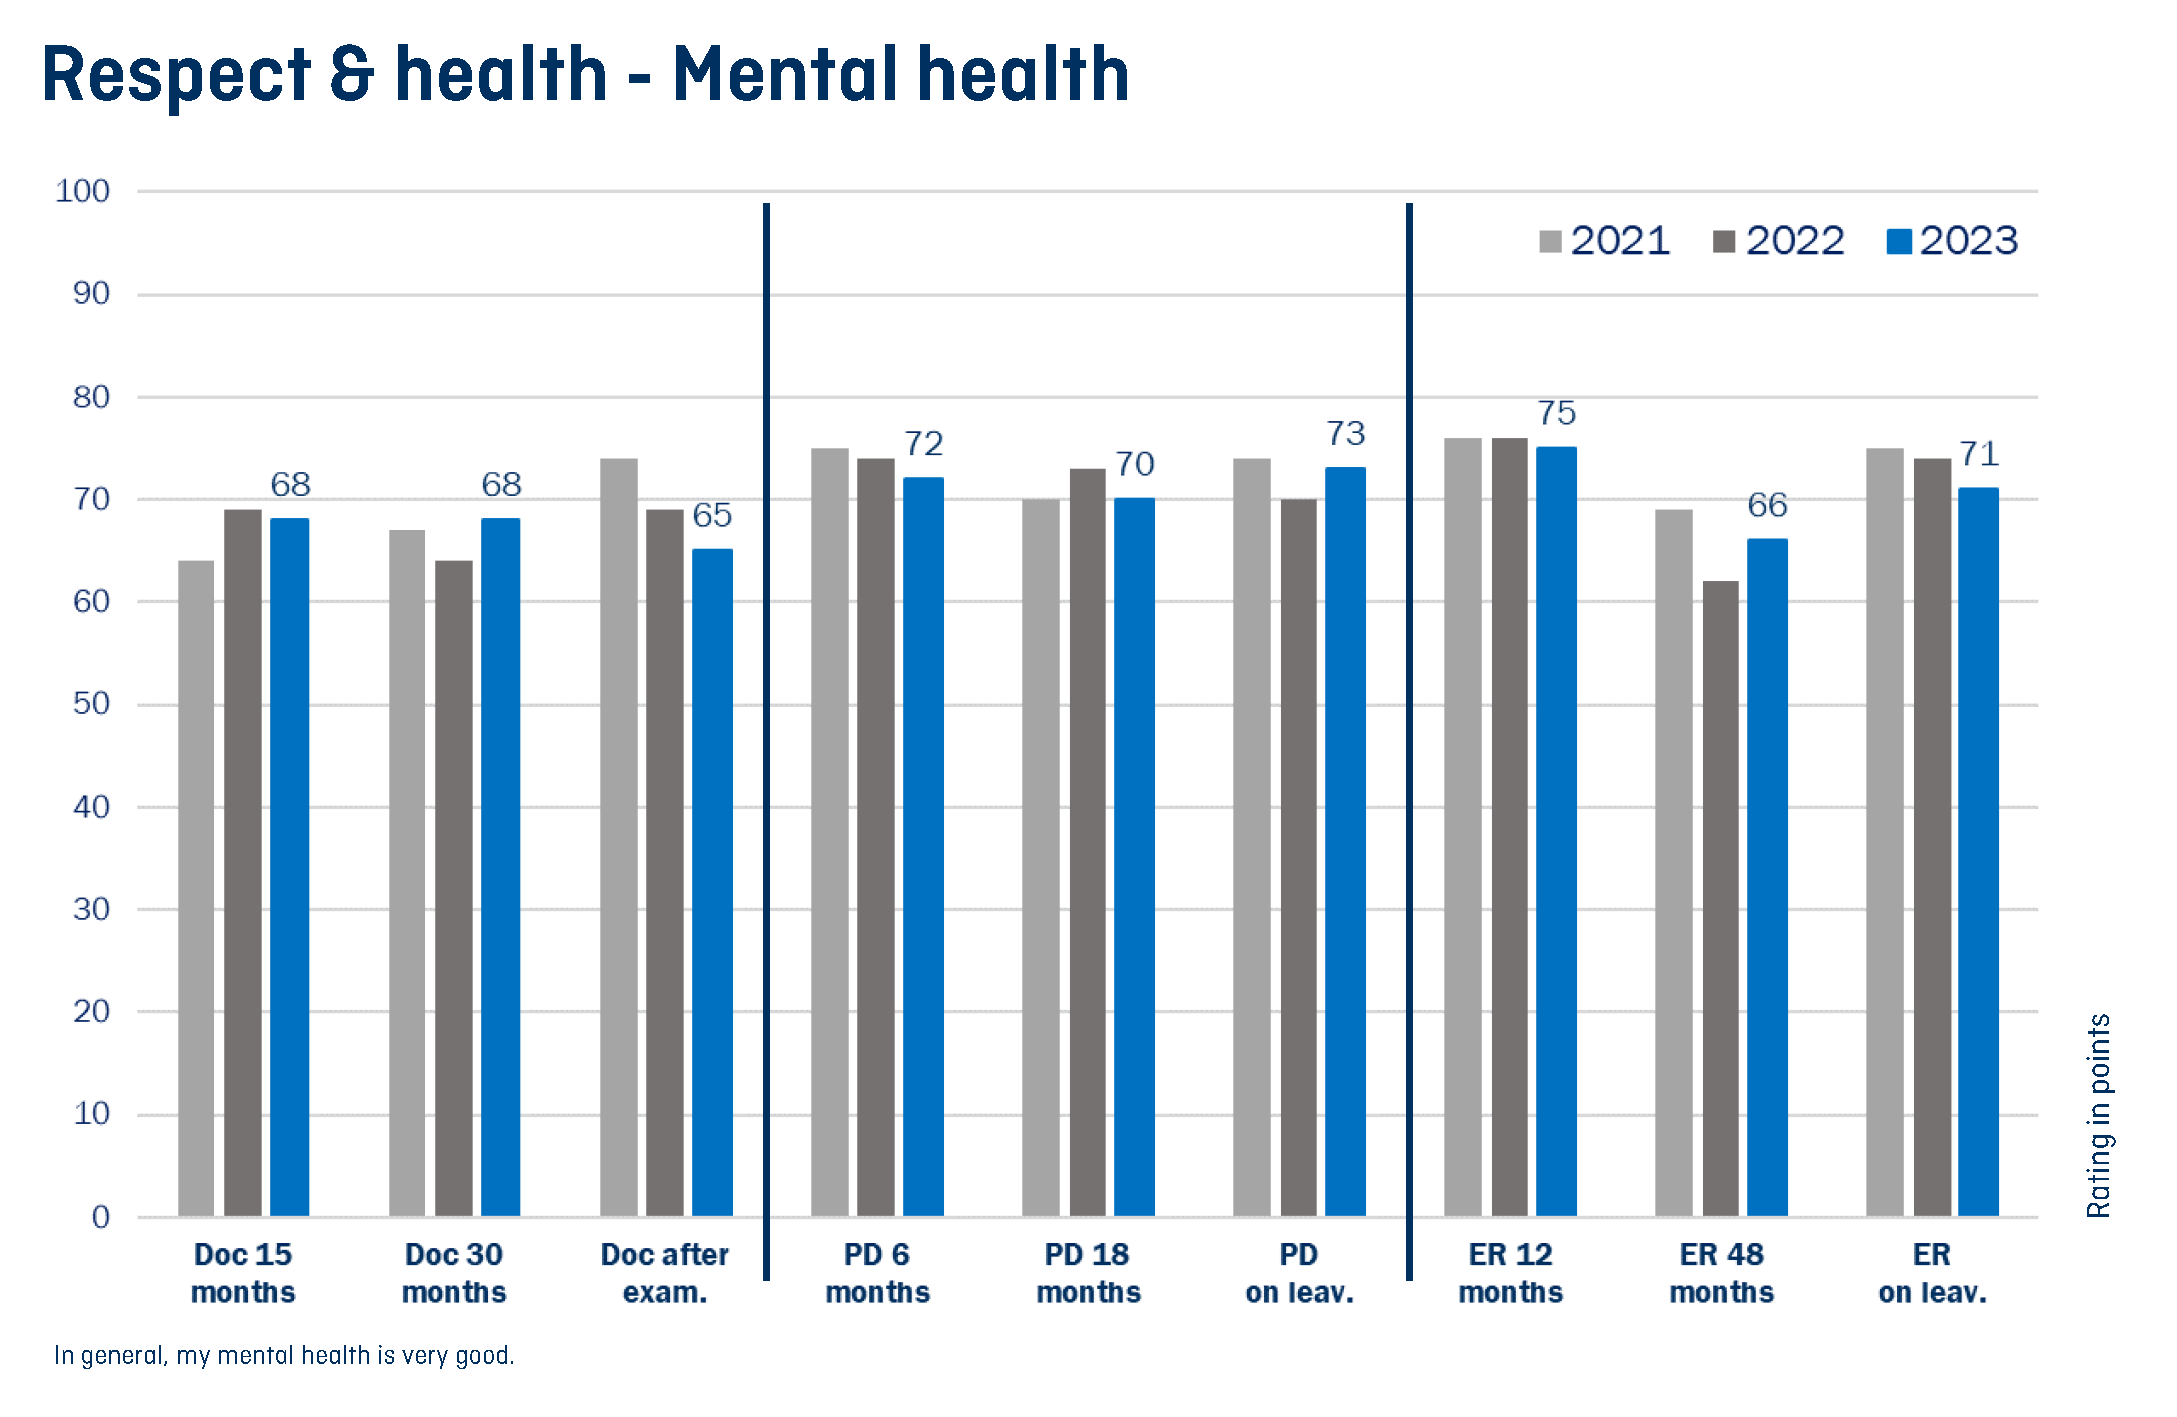 Vergr?sserte Ansicht: Grafik welche die mentale Gesundheit für unterschiedliche Anstellungspositionen über die Jahre 2021, 2022 und 2023 hinweg zeigt.